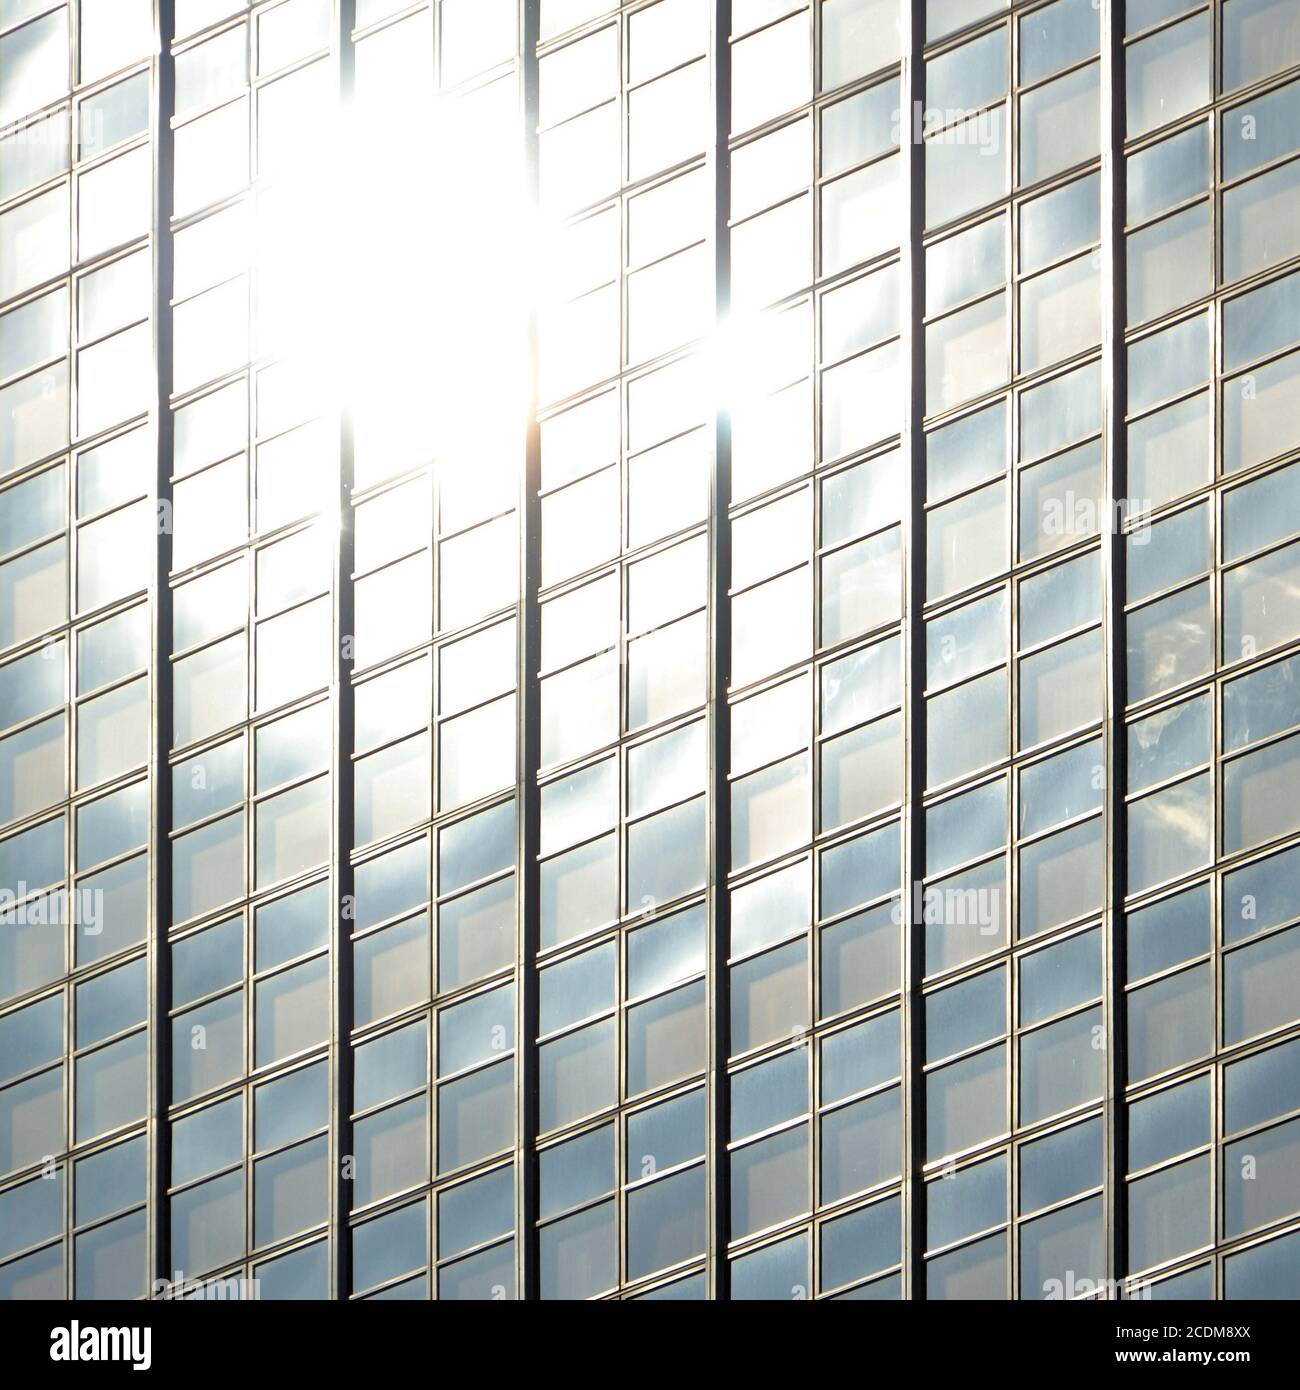 glass facade Stock Photo